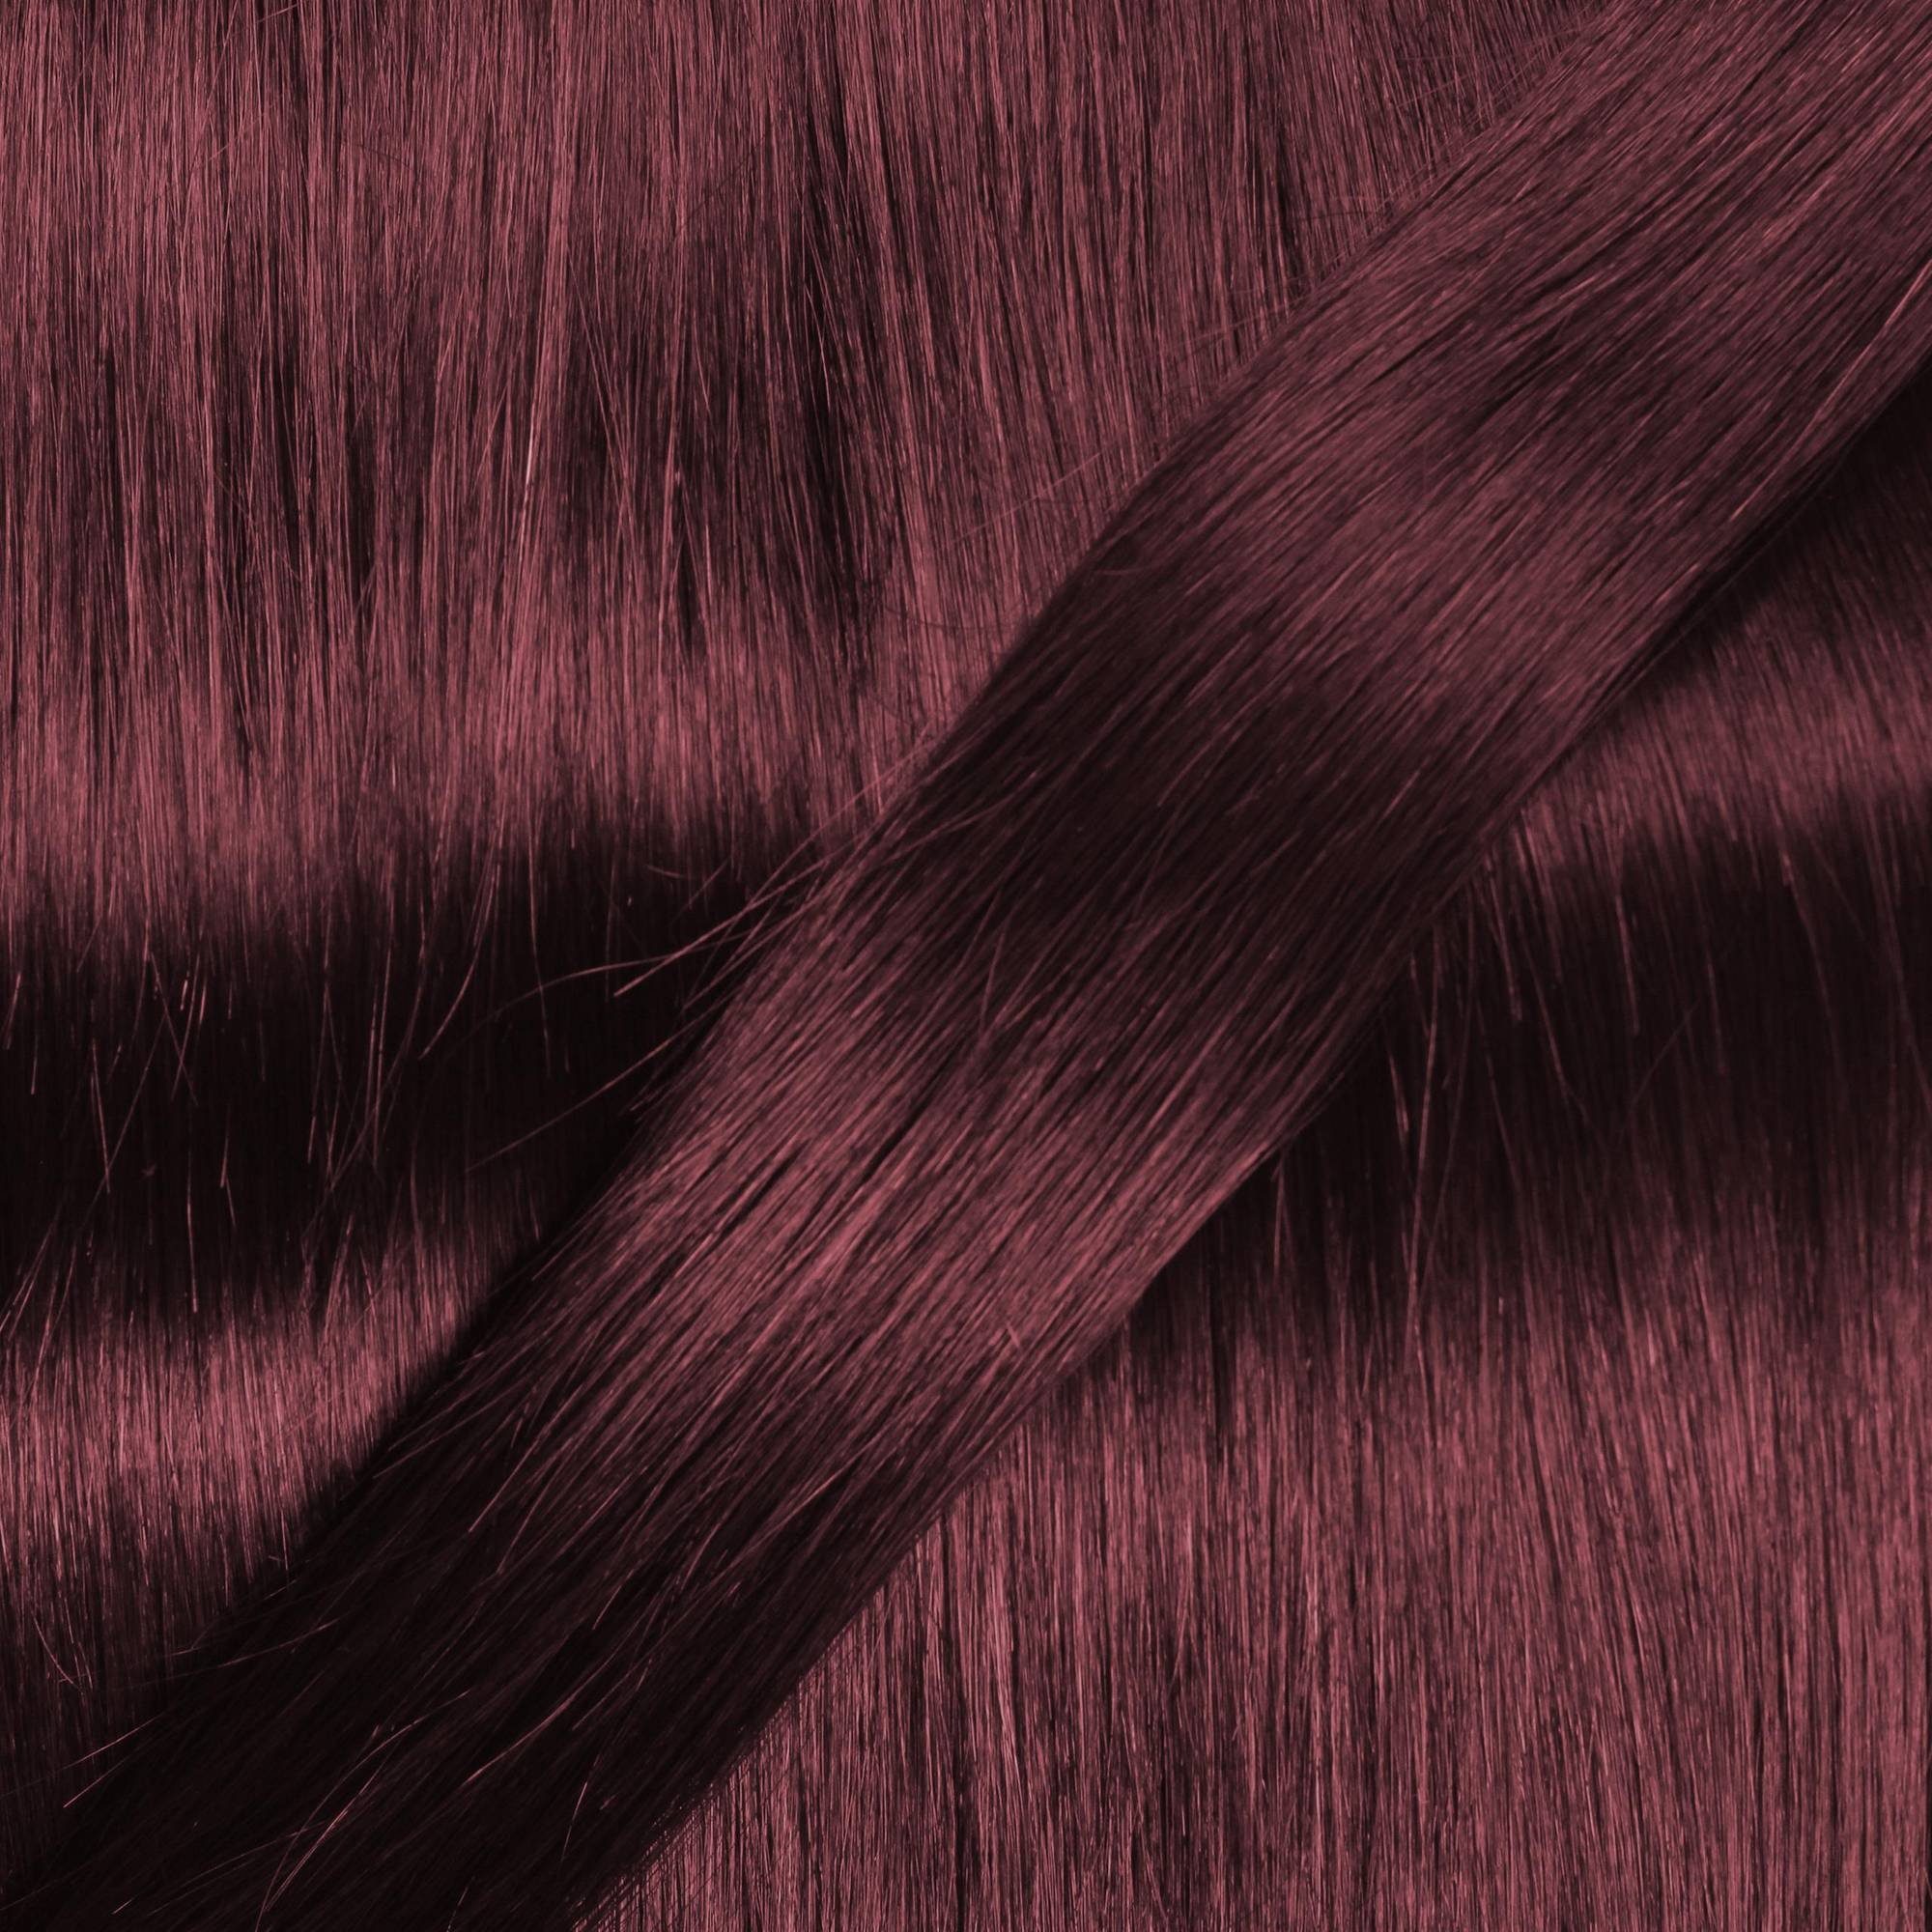 hair2heart Echthaar-Extension Premium Microring 50cm #55/66 Extensions Hellbraun Violett